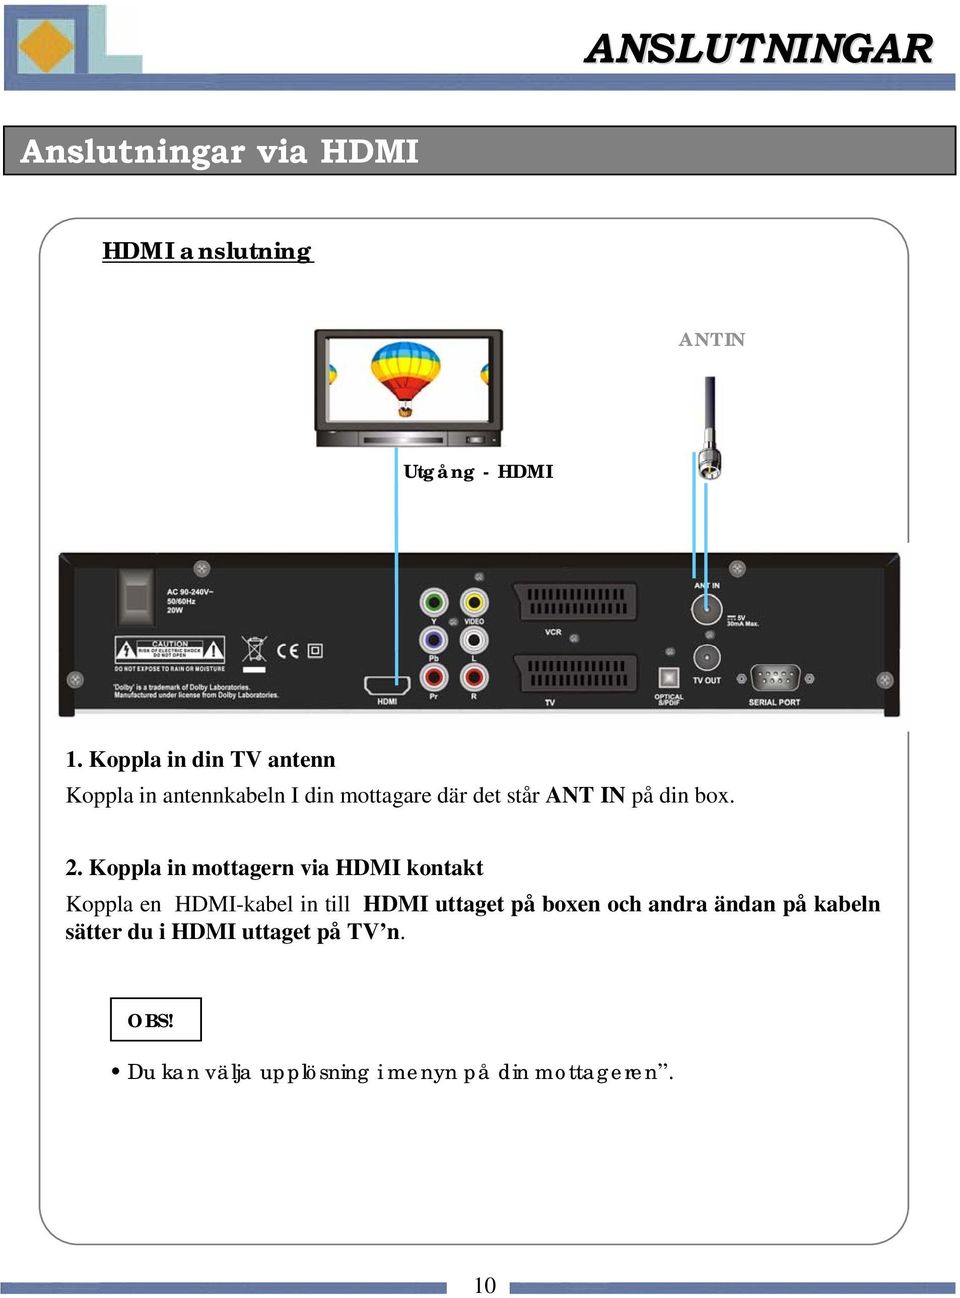 2. Koppla in mottagern via HDMI kontakt Koppla en HDMI-kabel in till HDMI uttaget på boxen och